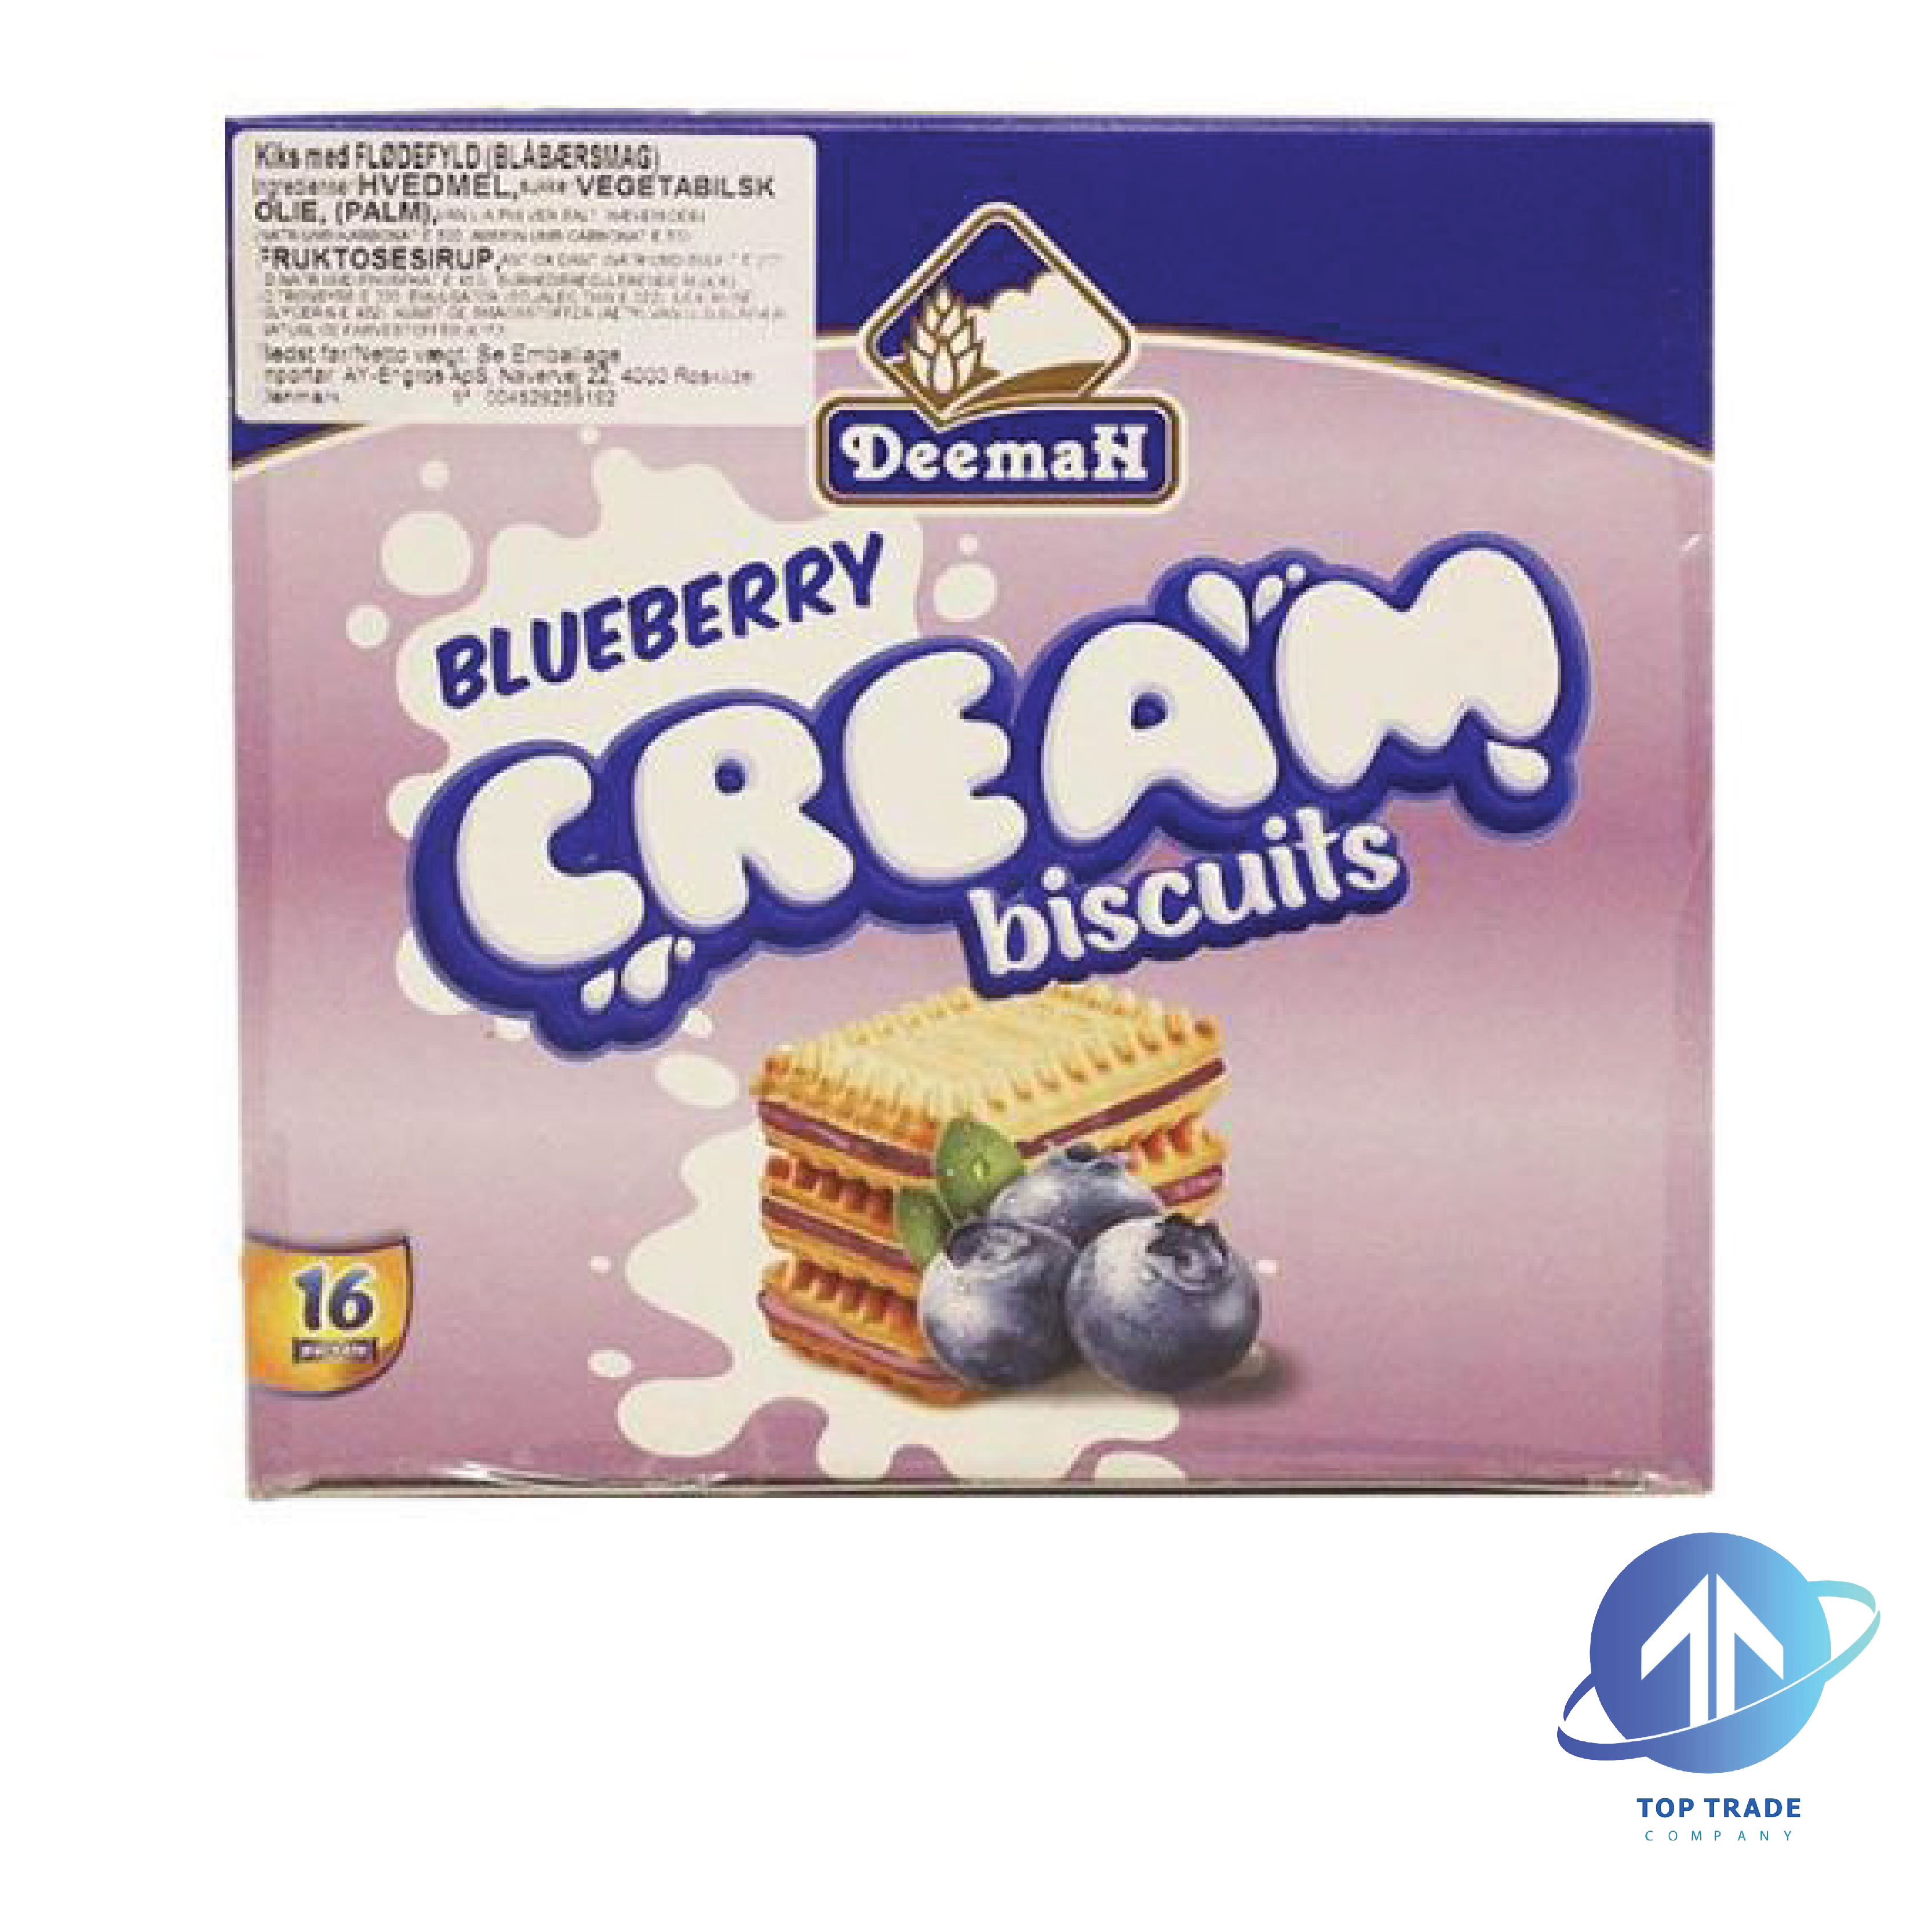 Deemah Blueberry Cream Biscuits 460gr